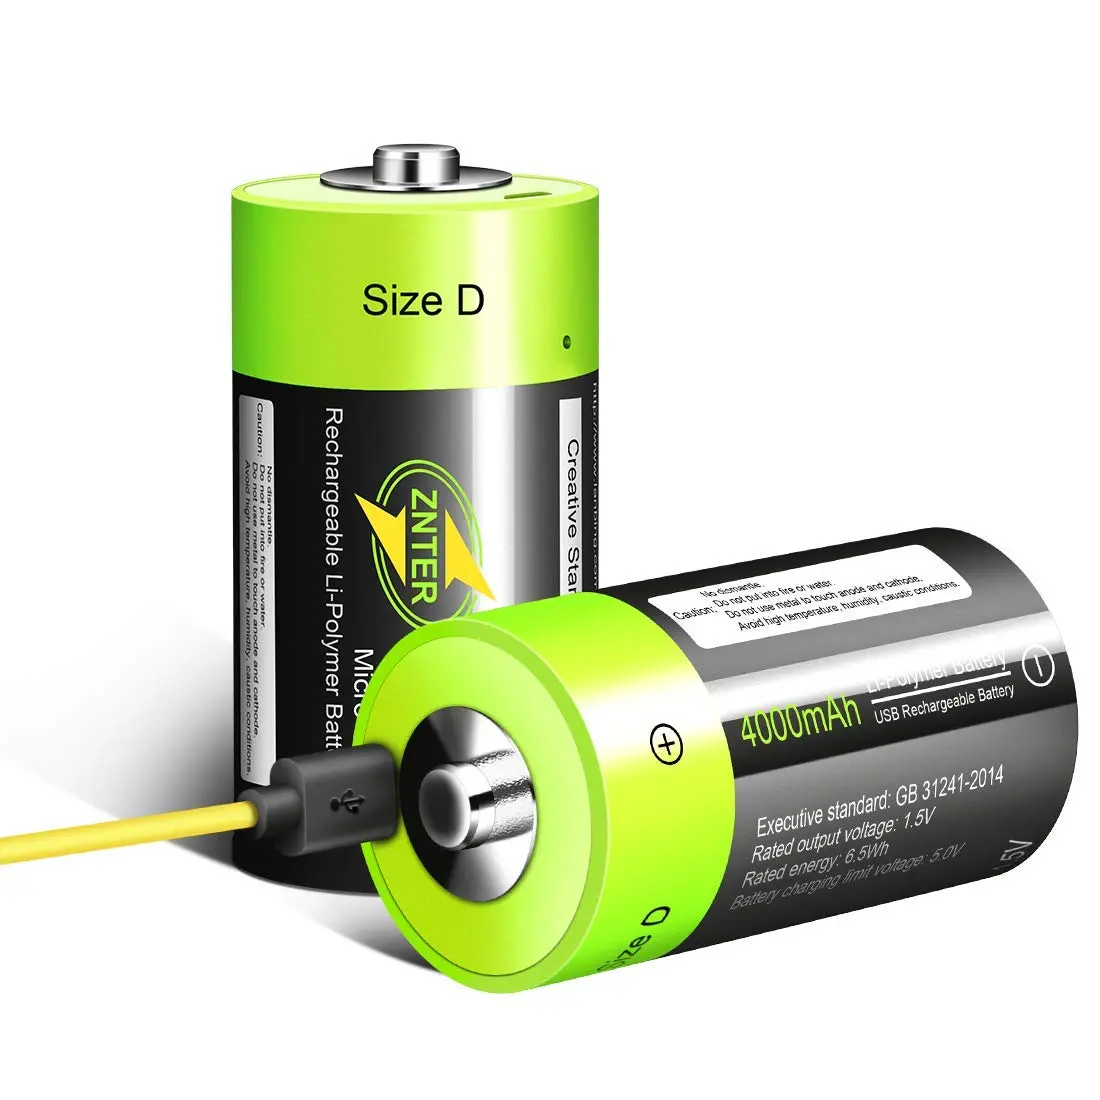 baterias d voltaje - Cuántos voltios tiene una batería D2